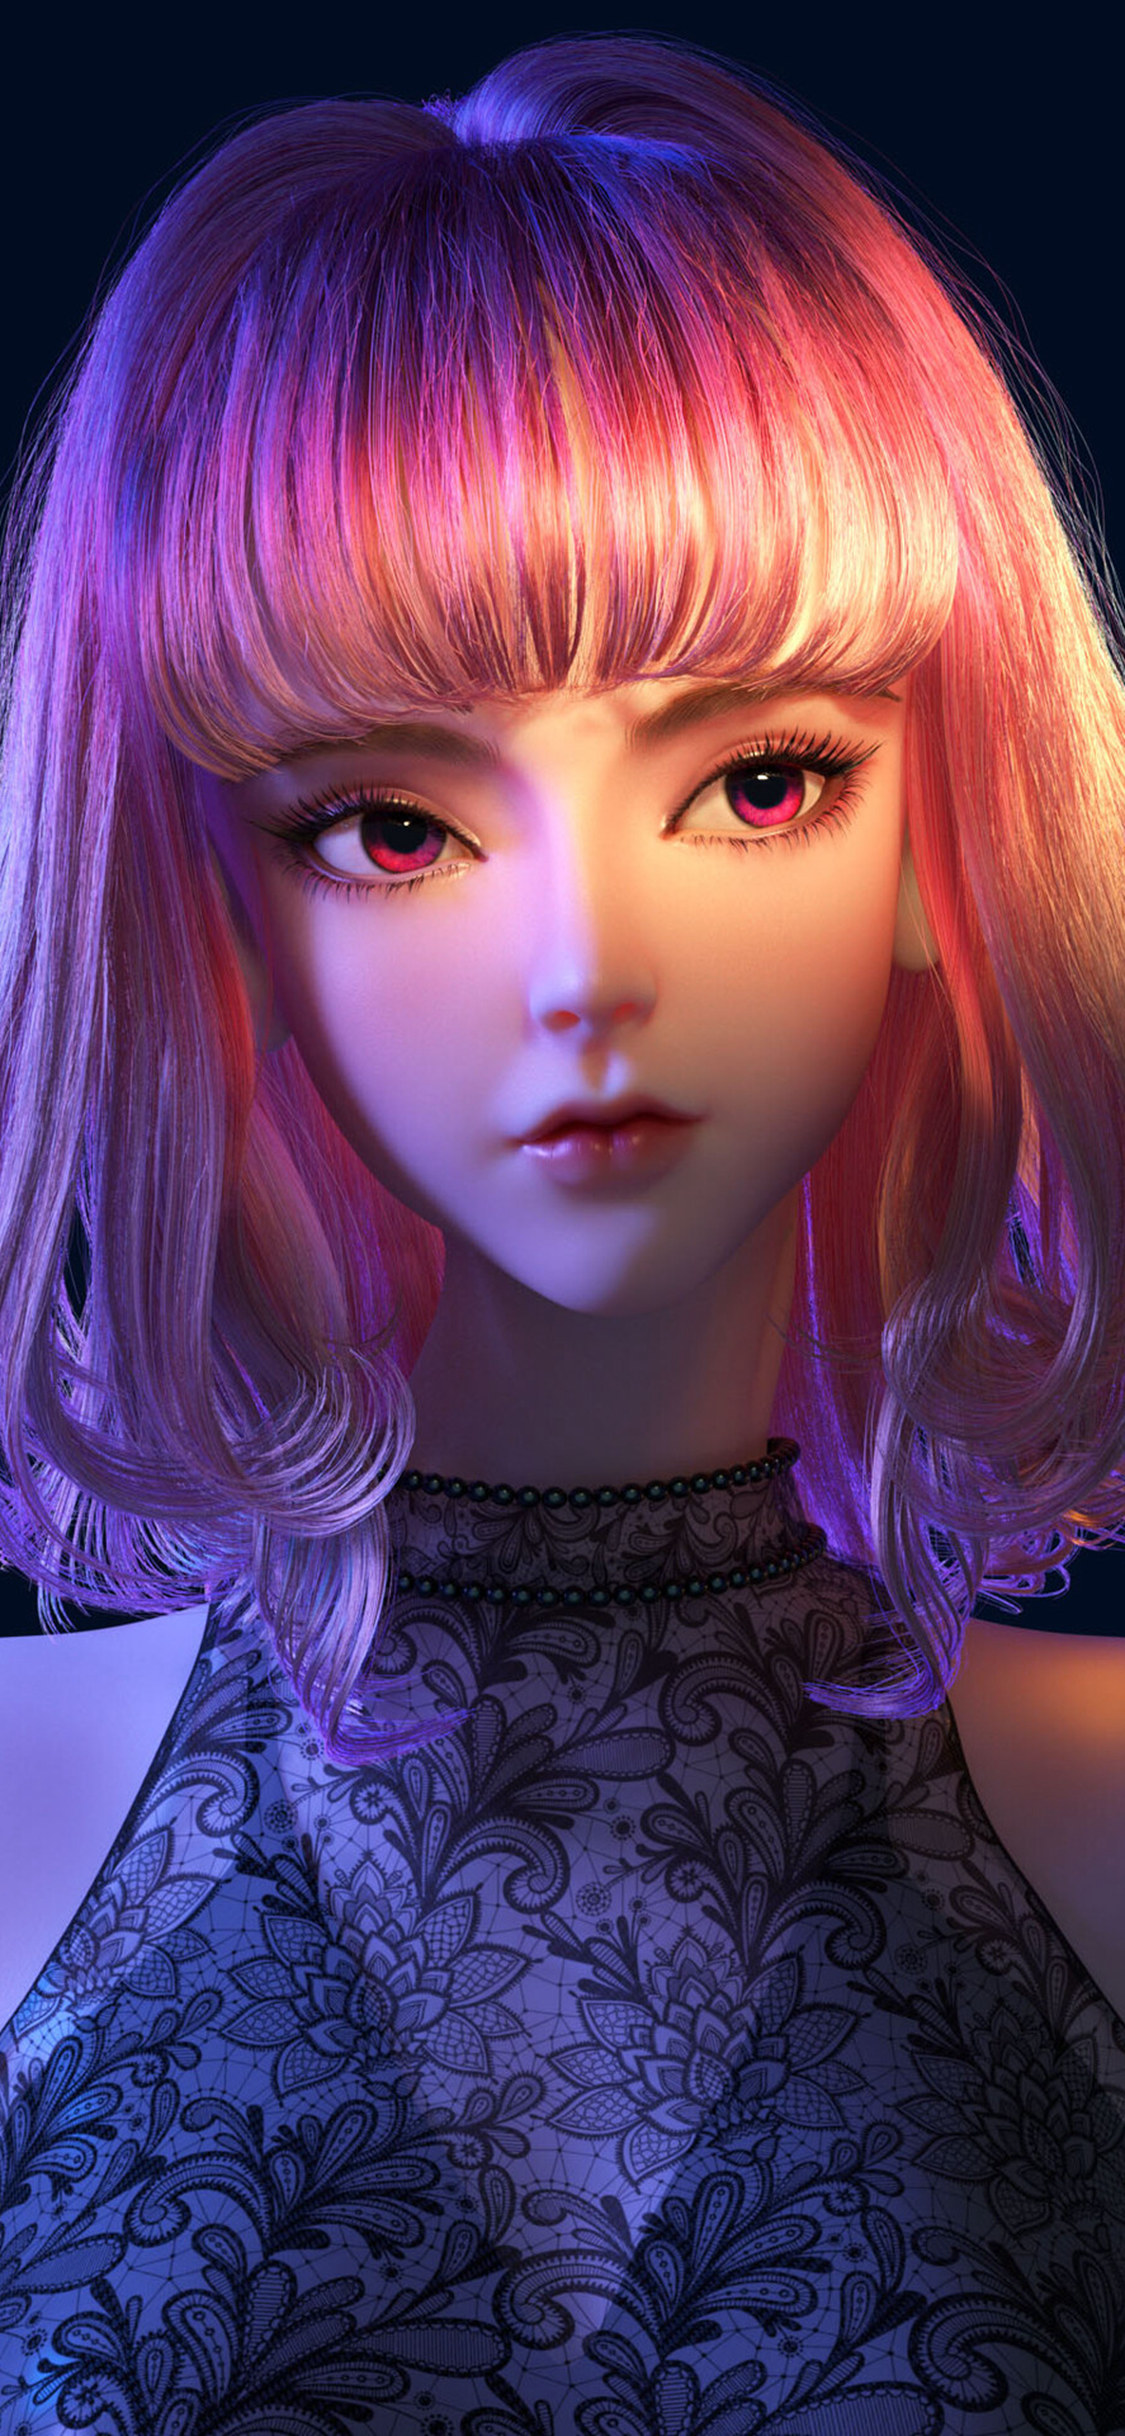 3D动漫粉色短发的清纯女孩手机背景图片